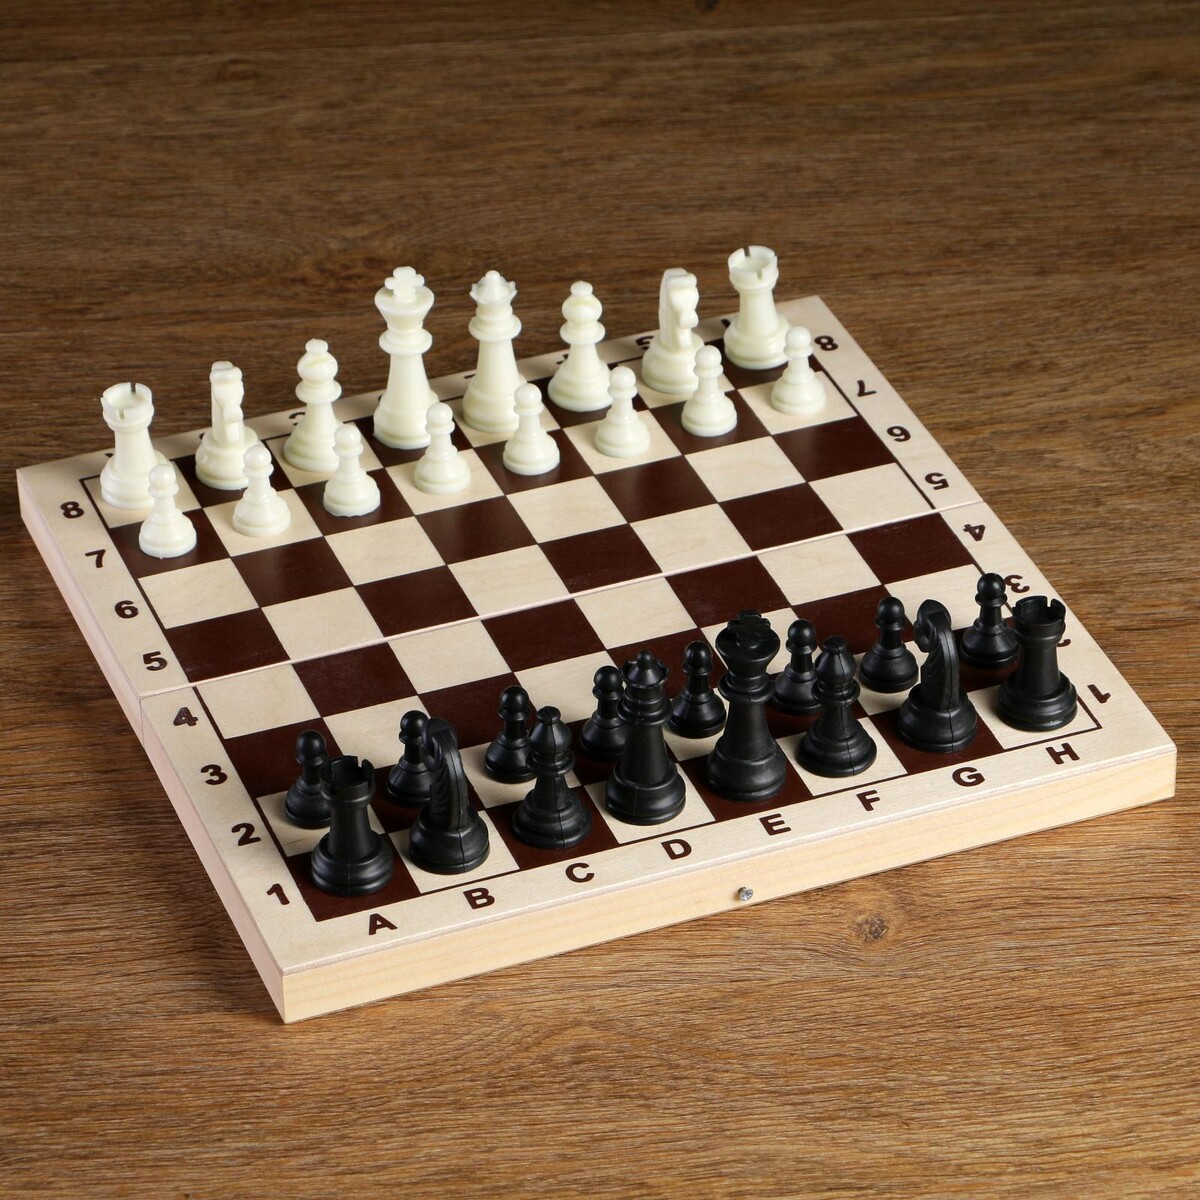 Шахматные фигуры, пластик, король h-6.2 см, пешка h-3 см шахматные фигуры пластик король h 4 2 см пешка h 2 см